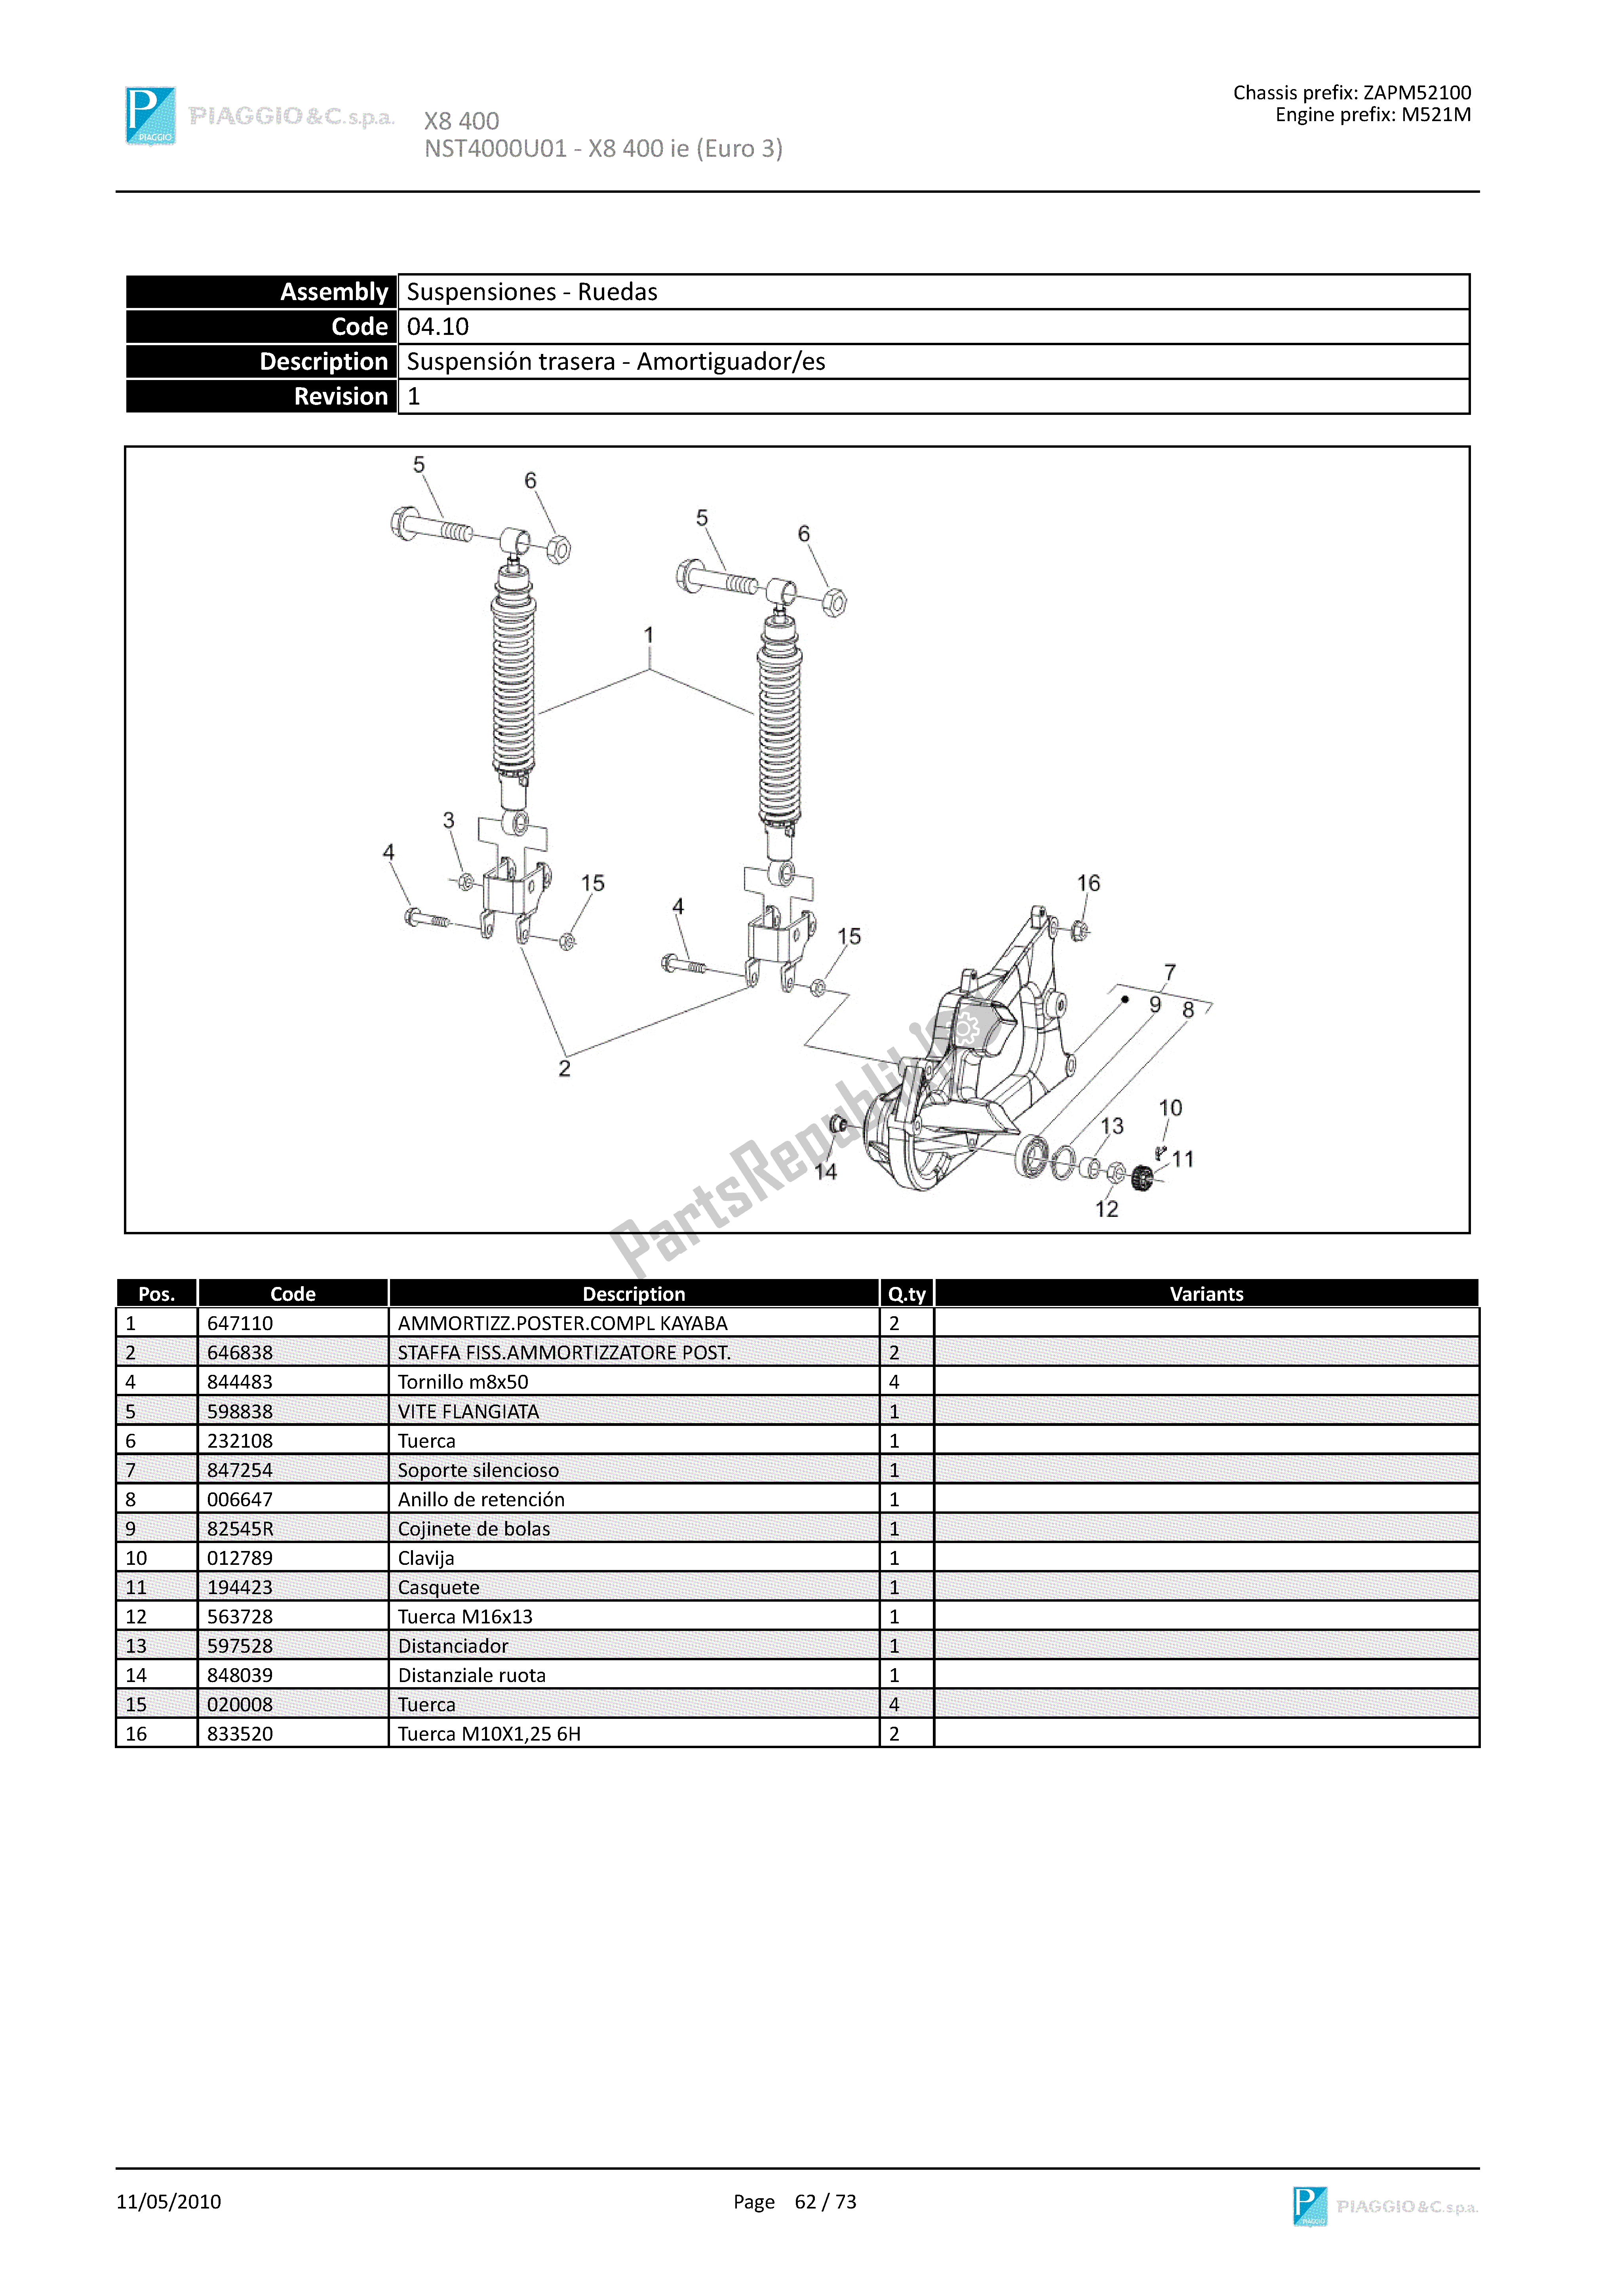 Todas las partes para Suspensión Trasera-amortiguador/es de Piaggio X8 400 2005 - 2008